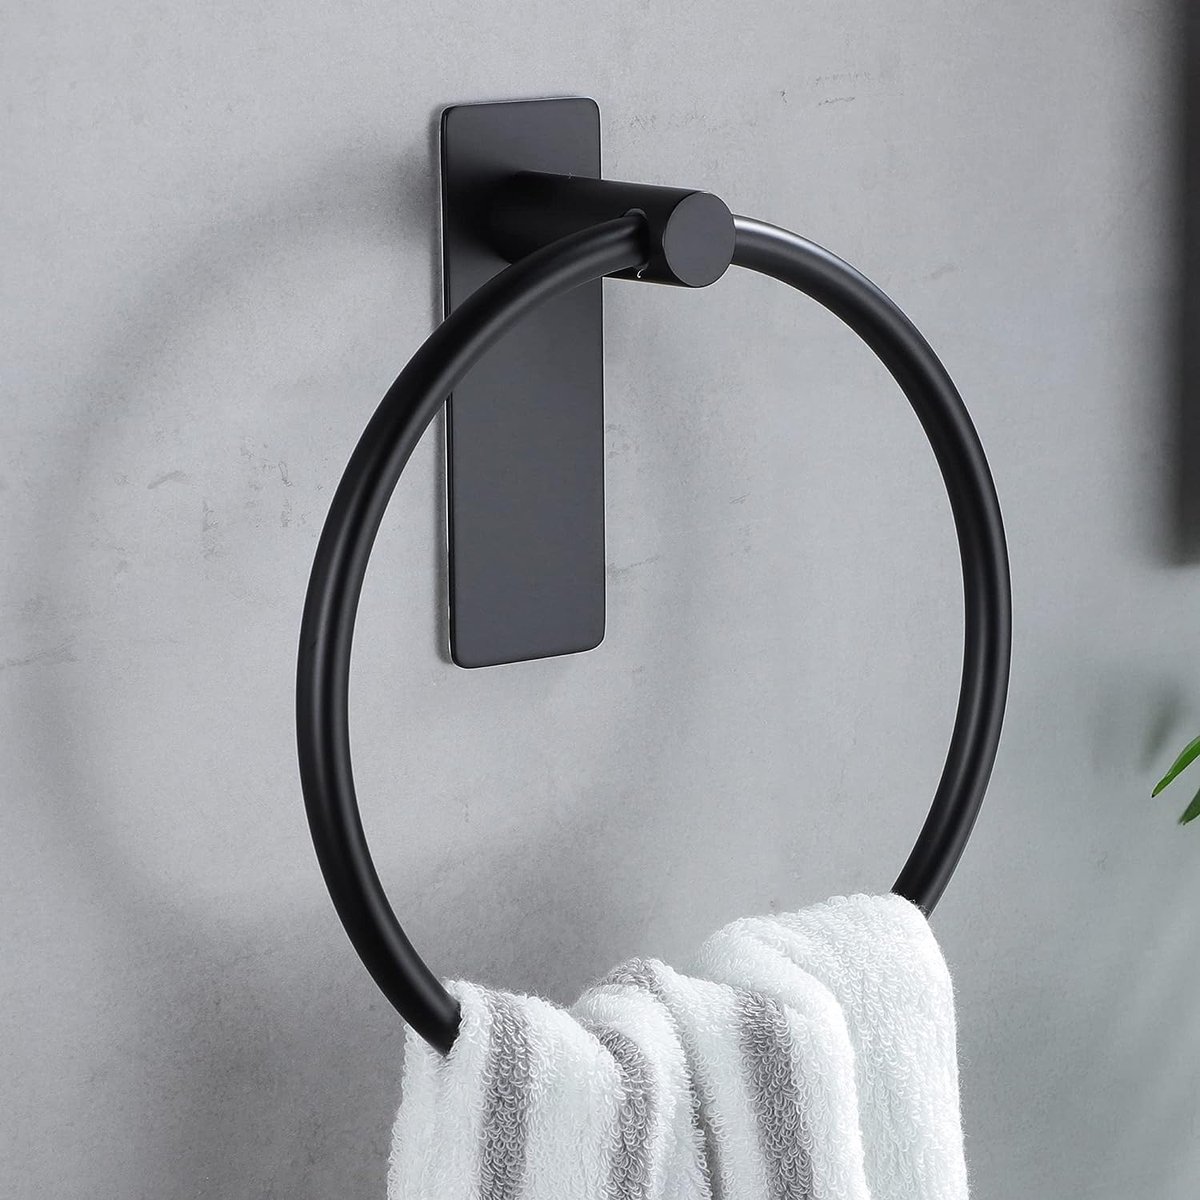 Handdoekring Zwart Handdoekhouder Ring Zonder boren Handdoekrail voor keuken en badkamer Zelfklevend roestvrij staal